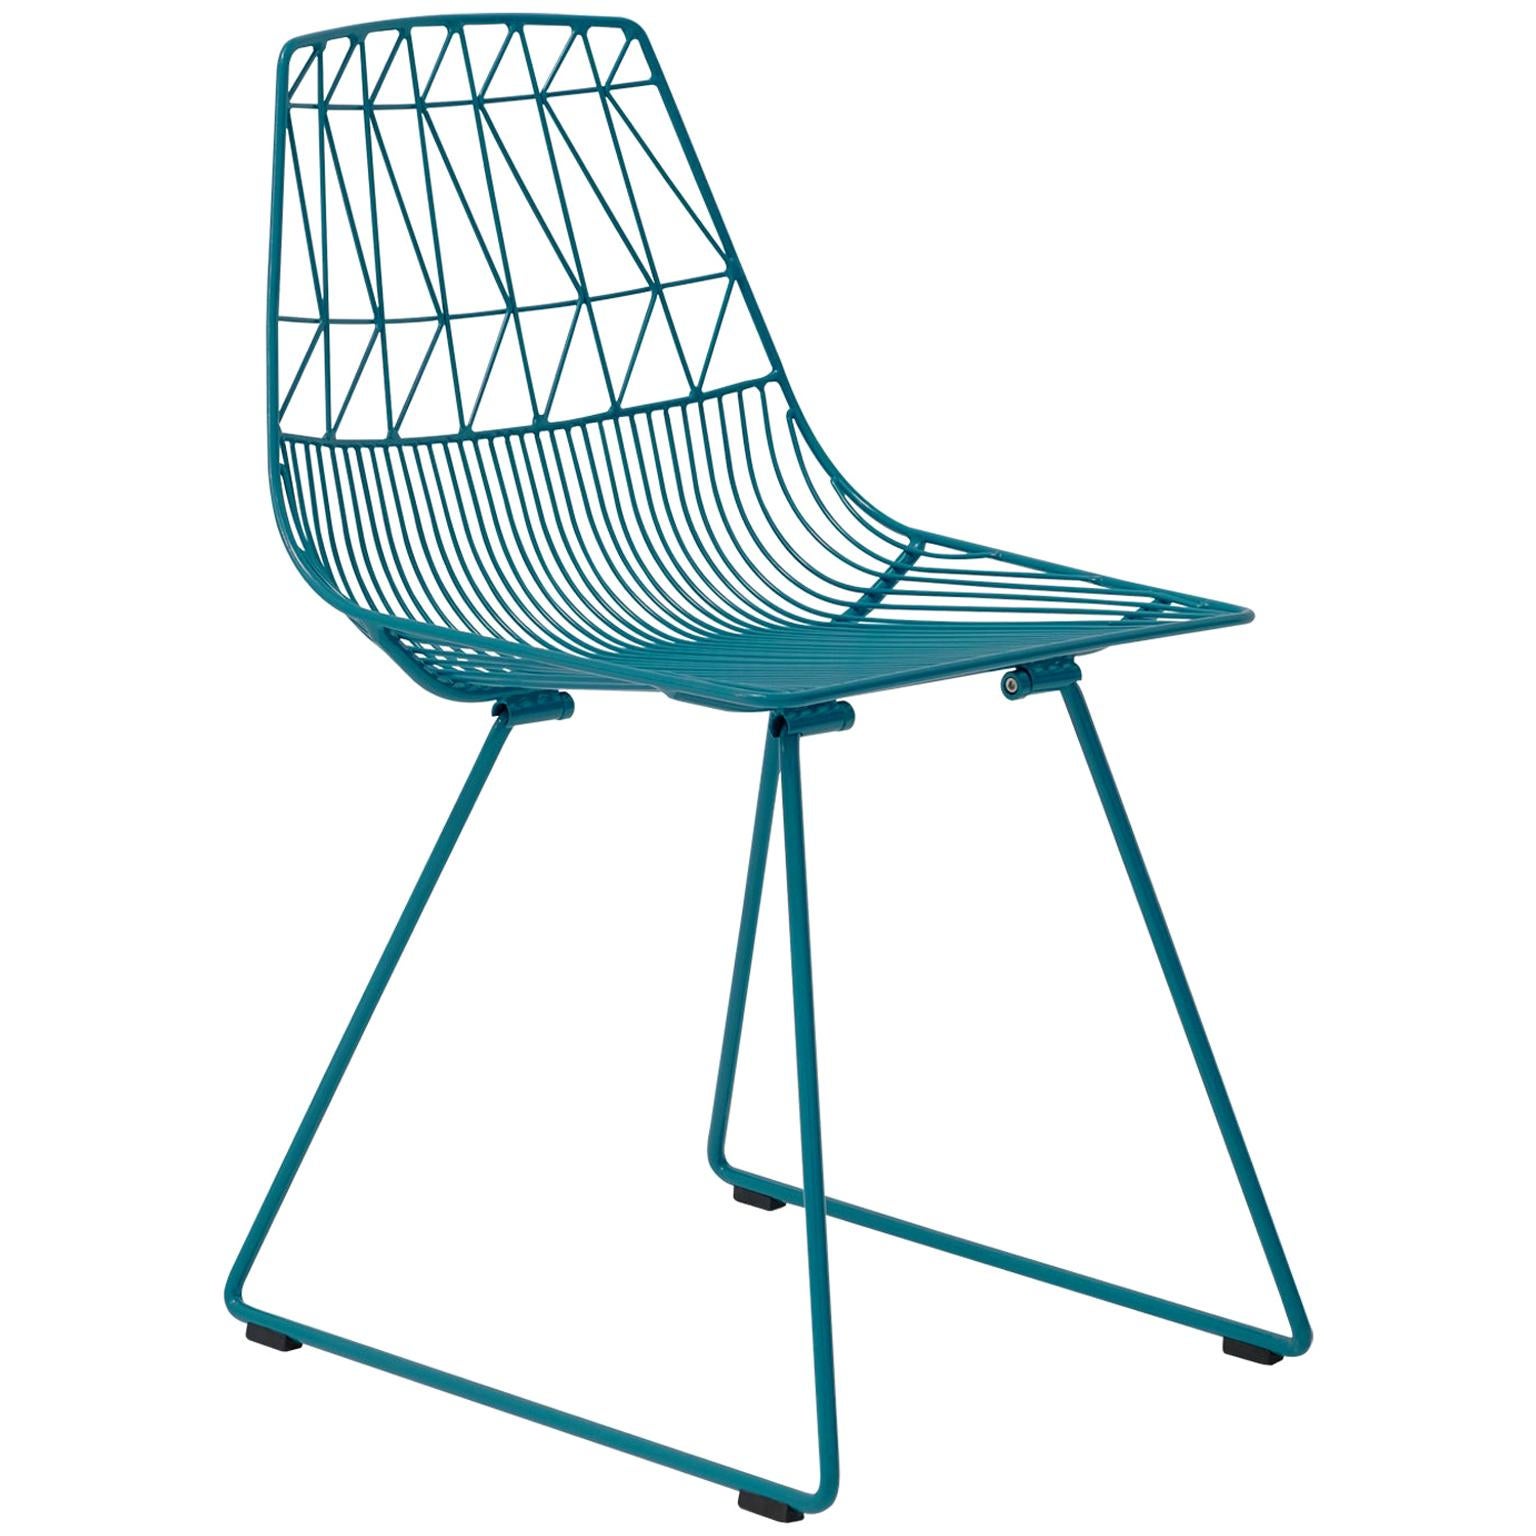 Chaise moderne du milieu du siècle dernier, minimaliste en fil métallique, la chaise Lucy en bleu paon en vente